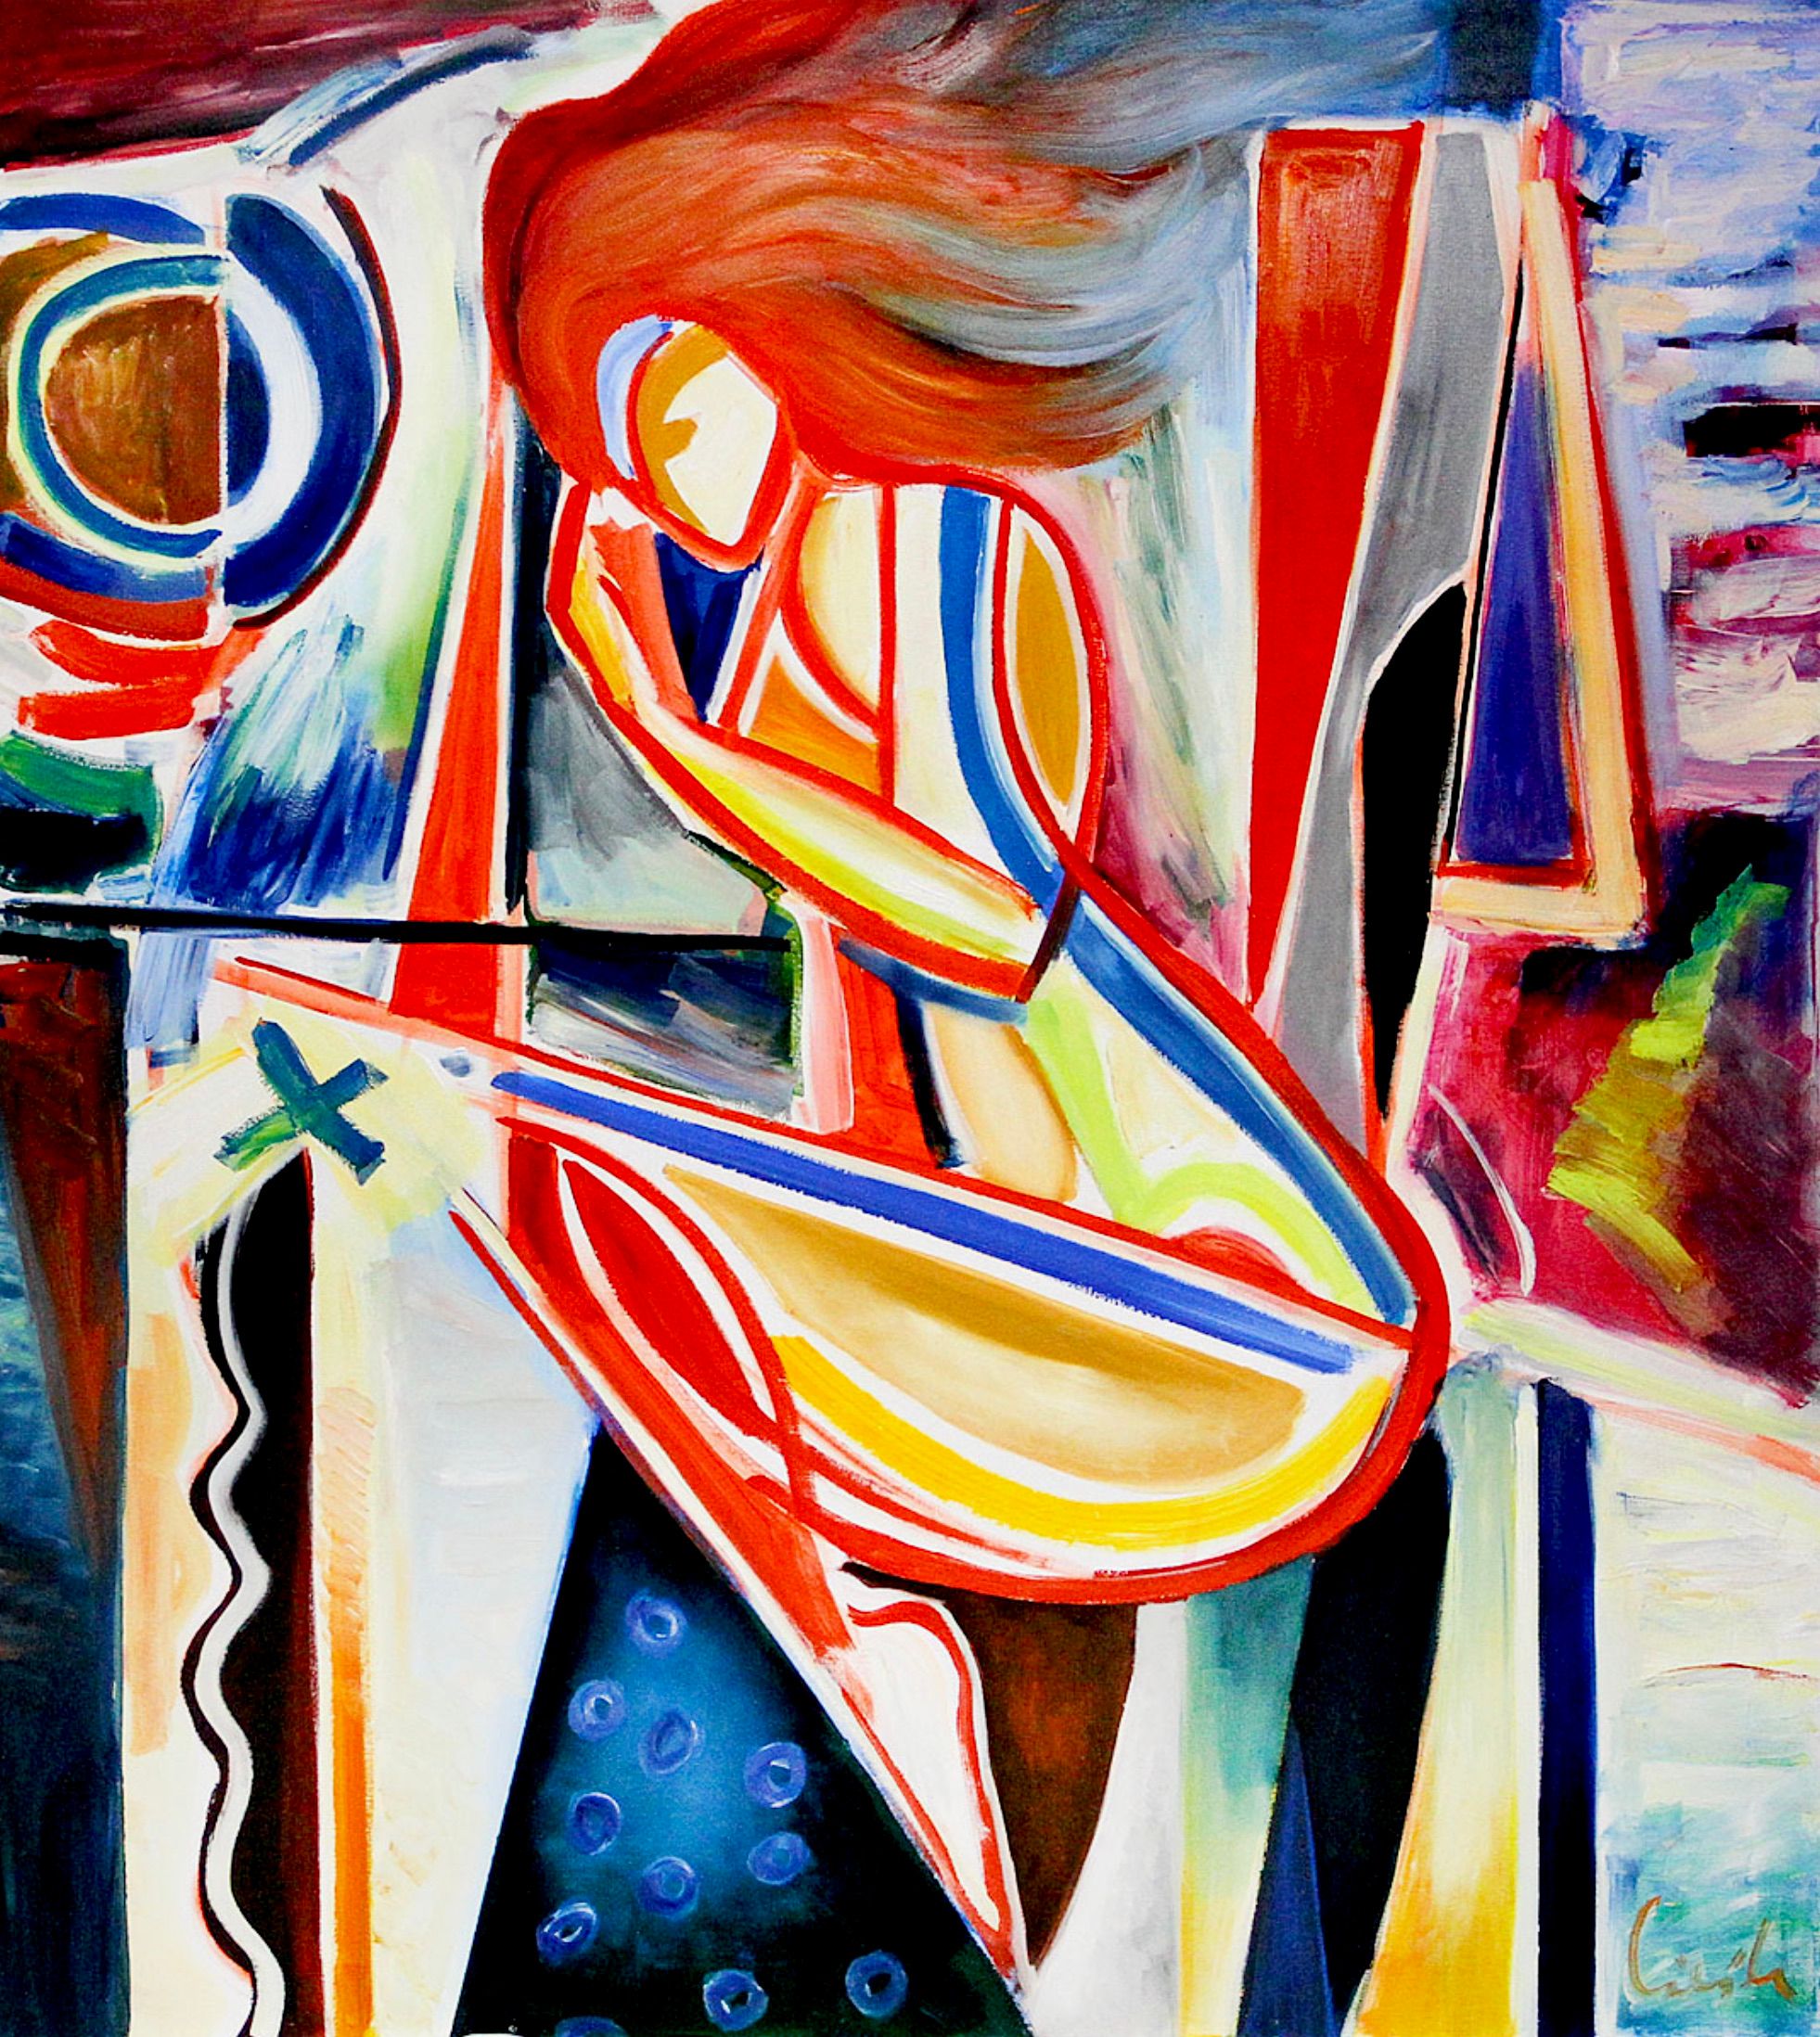 MECESLA Maciej Cieśla, "En la cama", Pintura abstracta de una joven en formas geométricas y agresivas combinaciones de colores con acentos rojos.